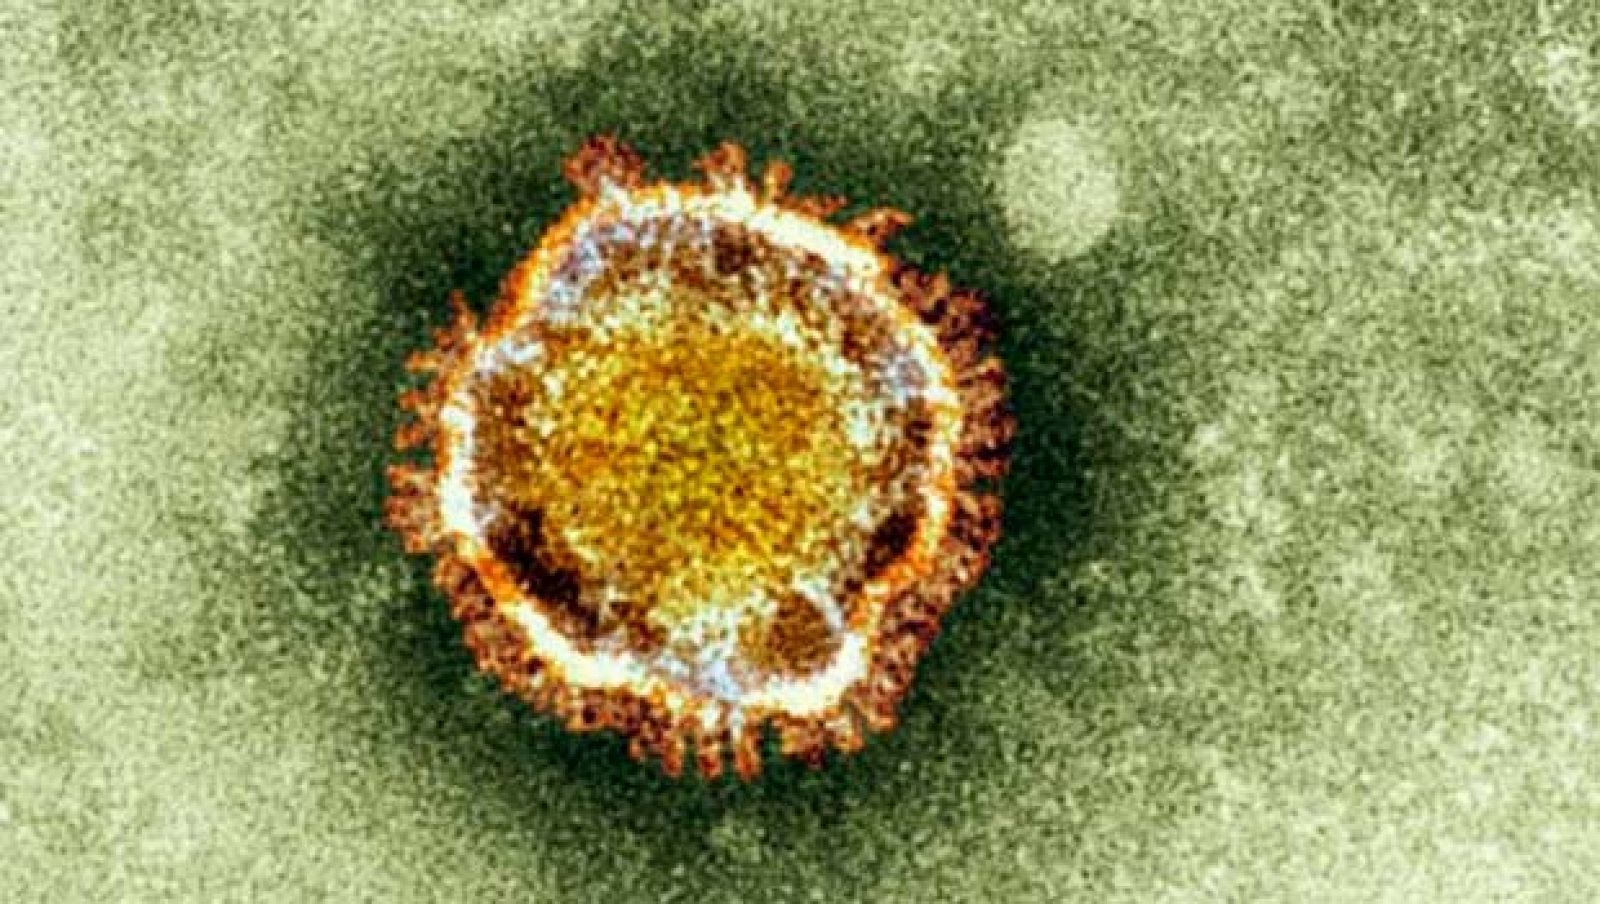 Una imagen de microscopio de un coronavirus